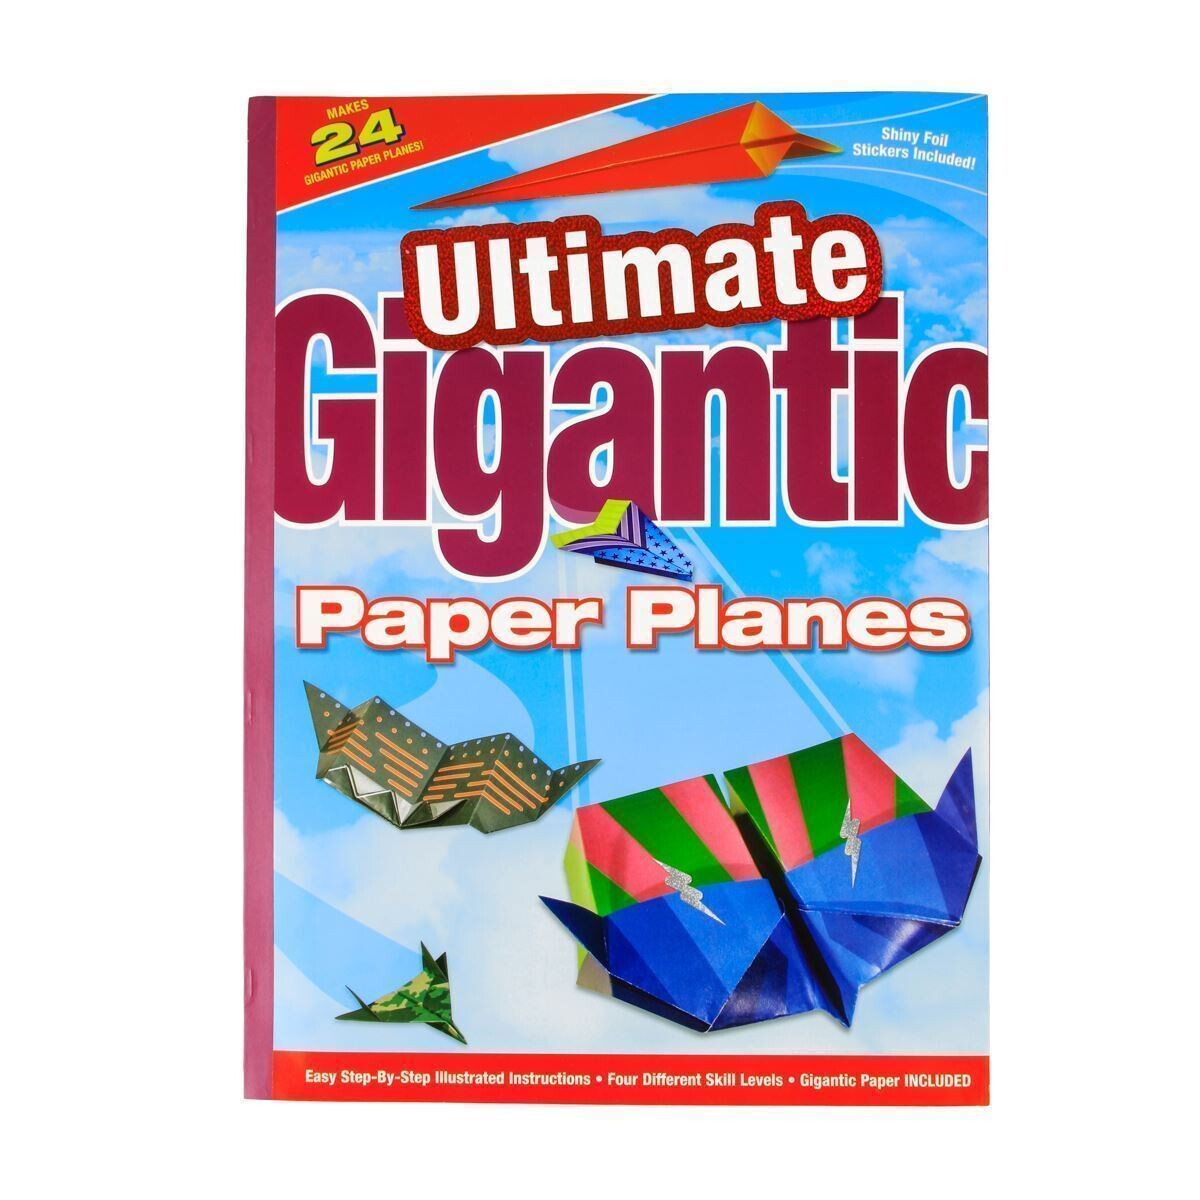 Ultimate Gigantic Paper Planes, name: Regular